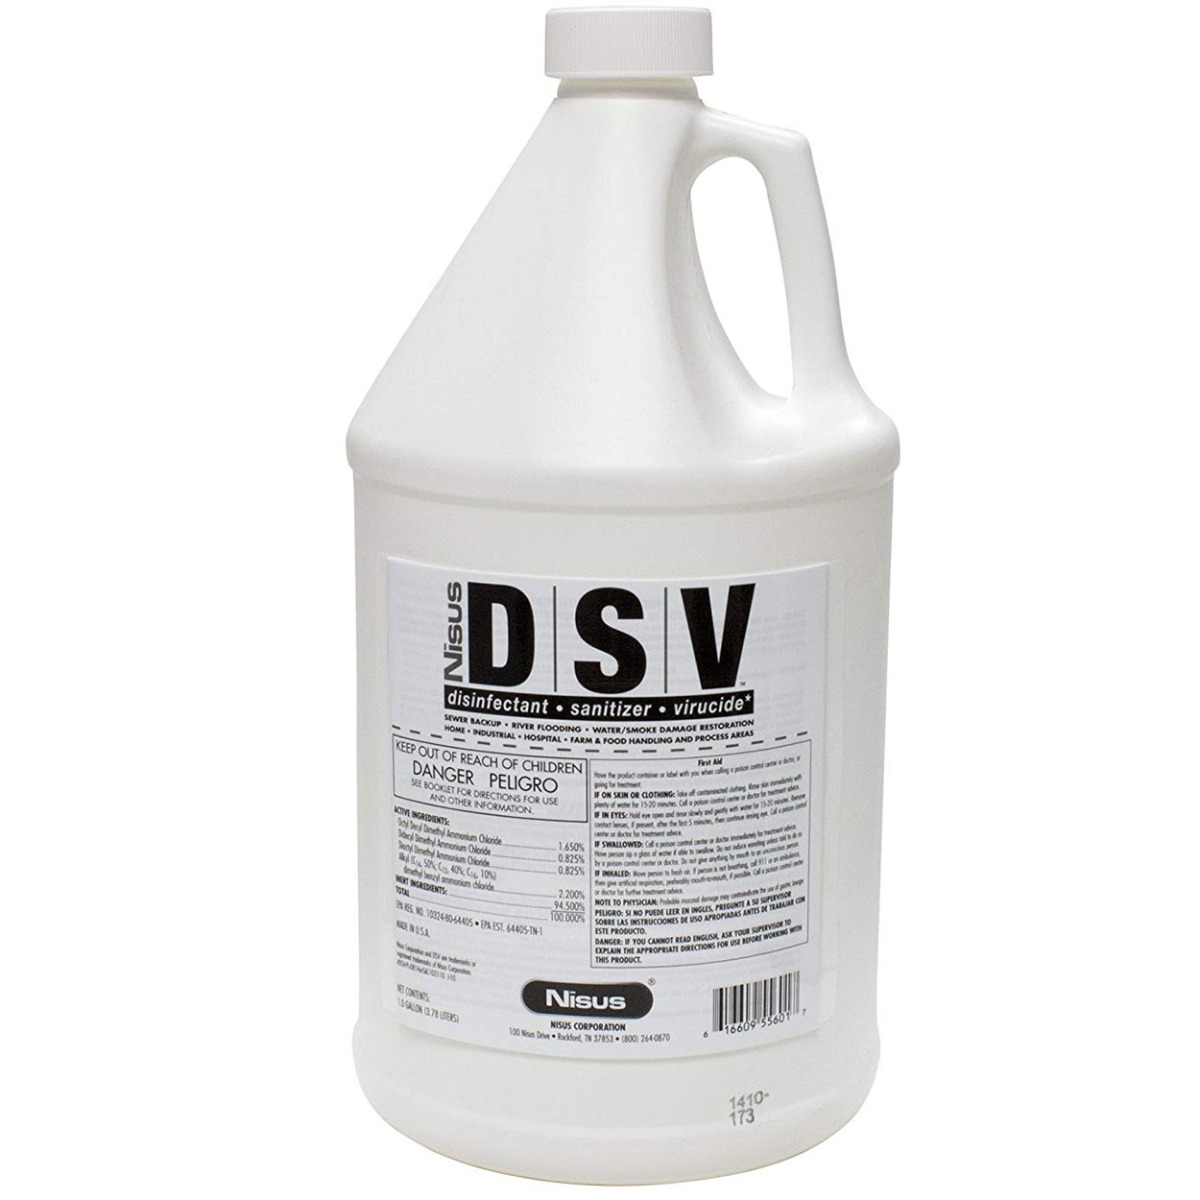 Nisus DSV-Disinfectant,Sanitizer,Virucid